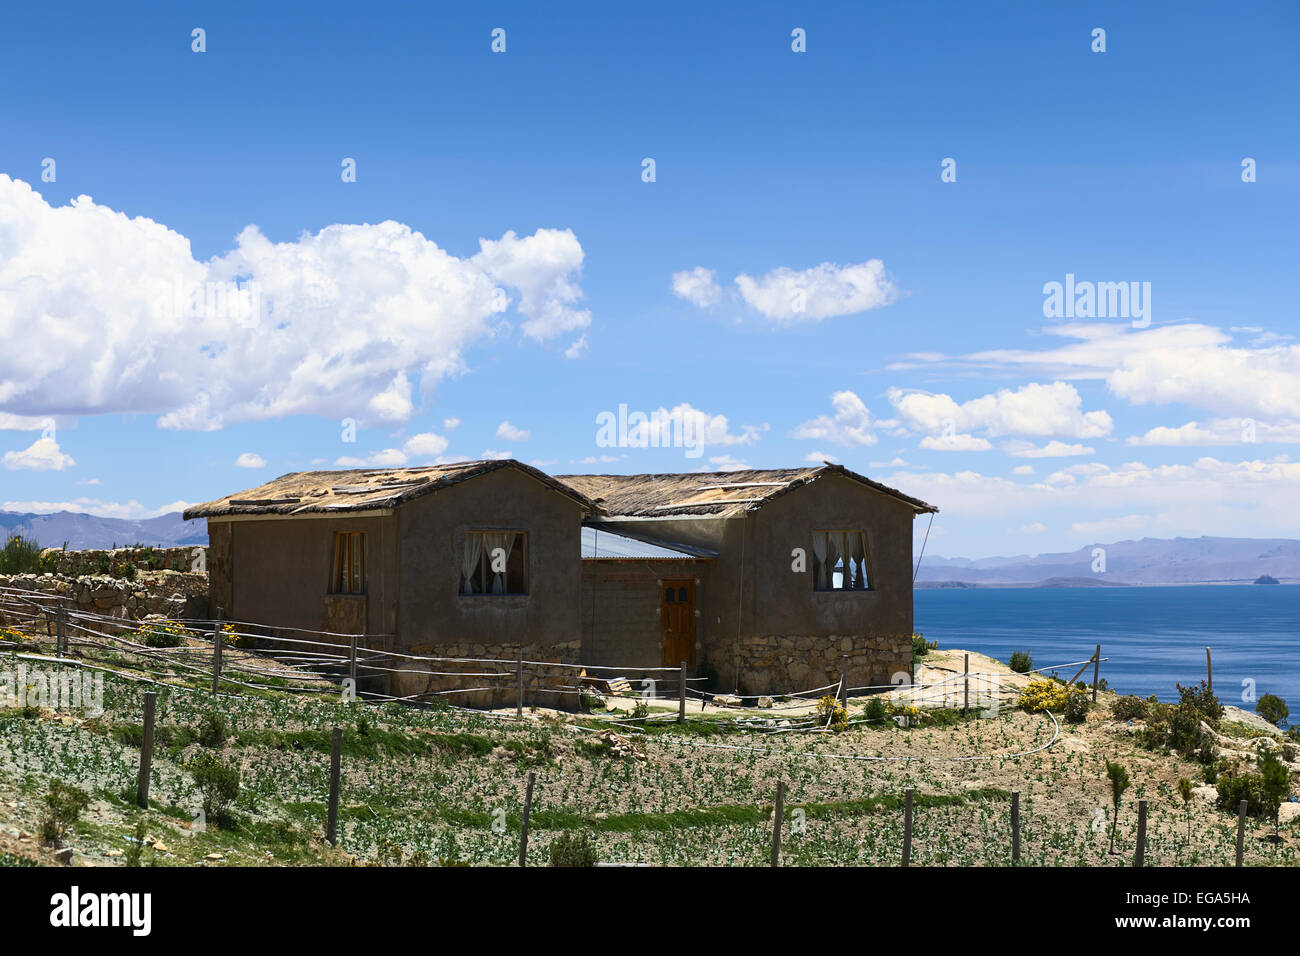 Chambre avec jardin debout sur une colline dans le sud-ouest sur l'Isla del Sol (Île du Soleil) dans le lac Titicaca, Bolivie Banque D'Images